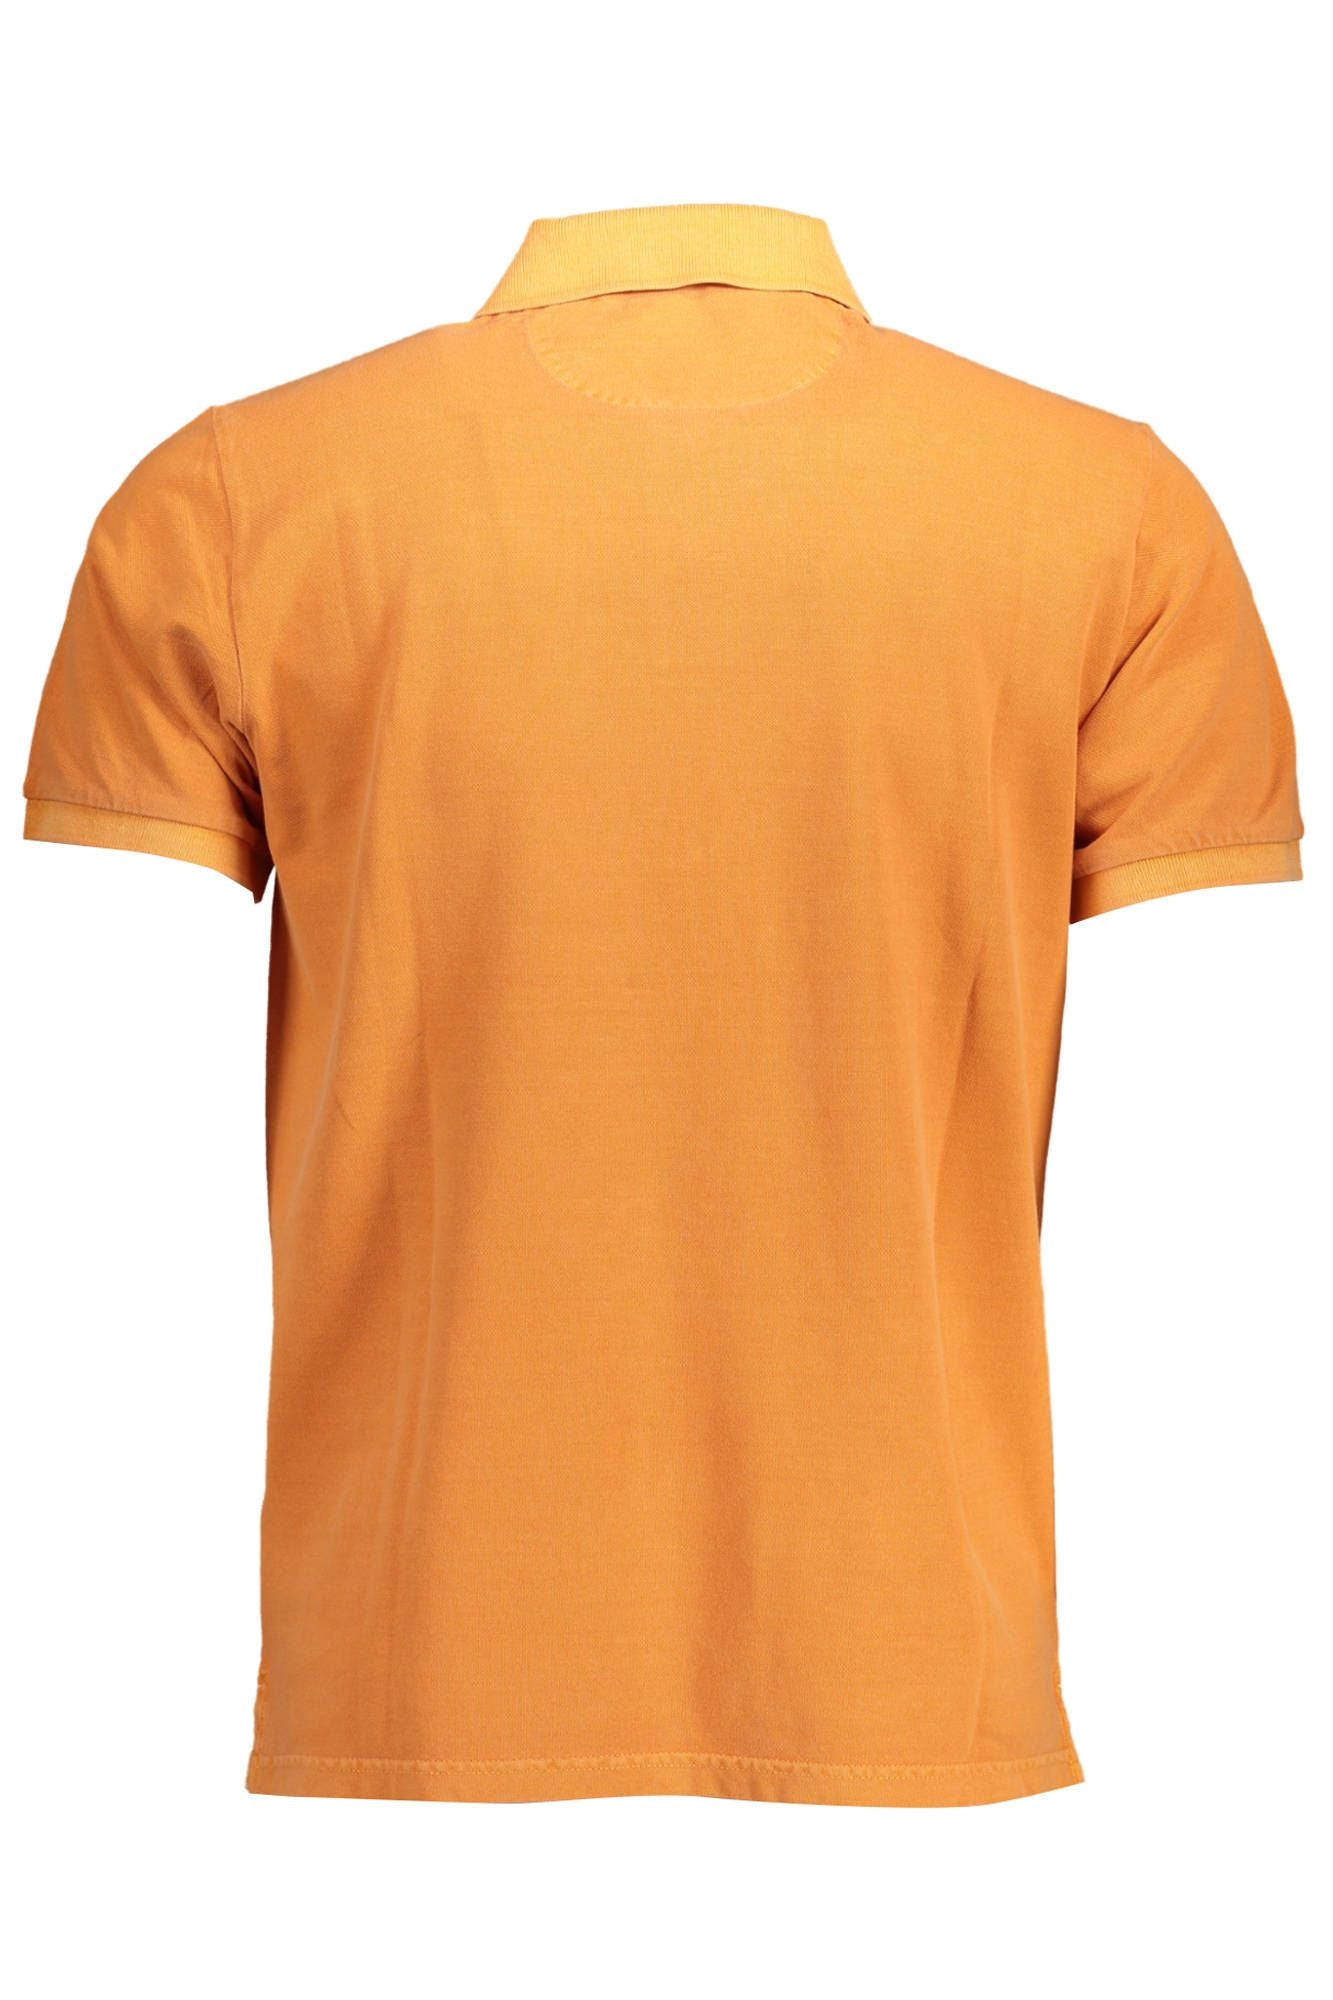 Gant Orange Cotton Polo Shirt